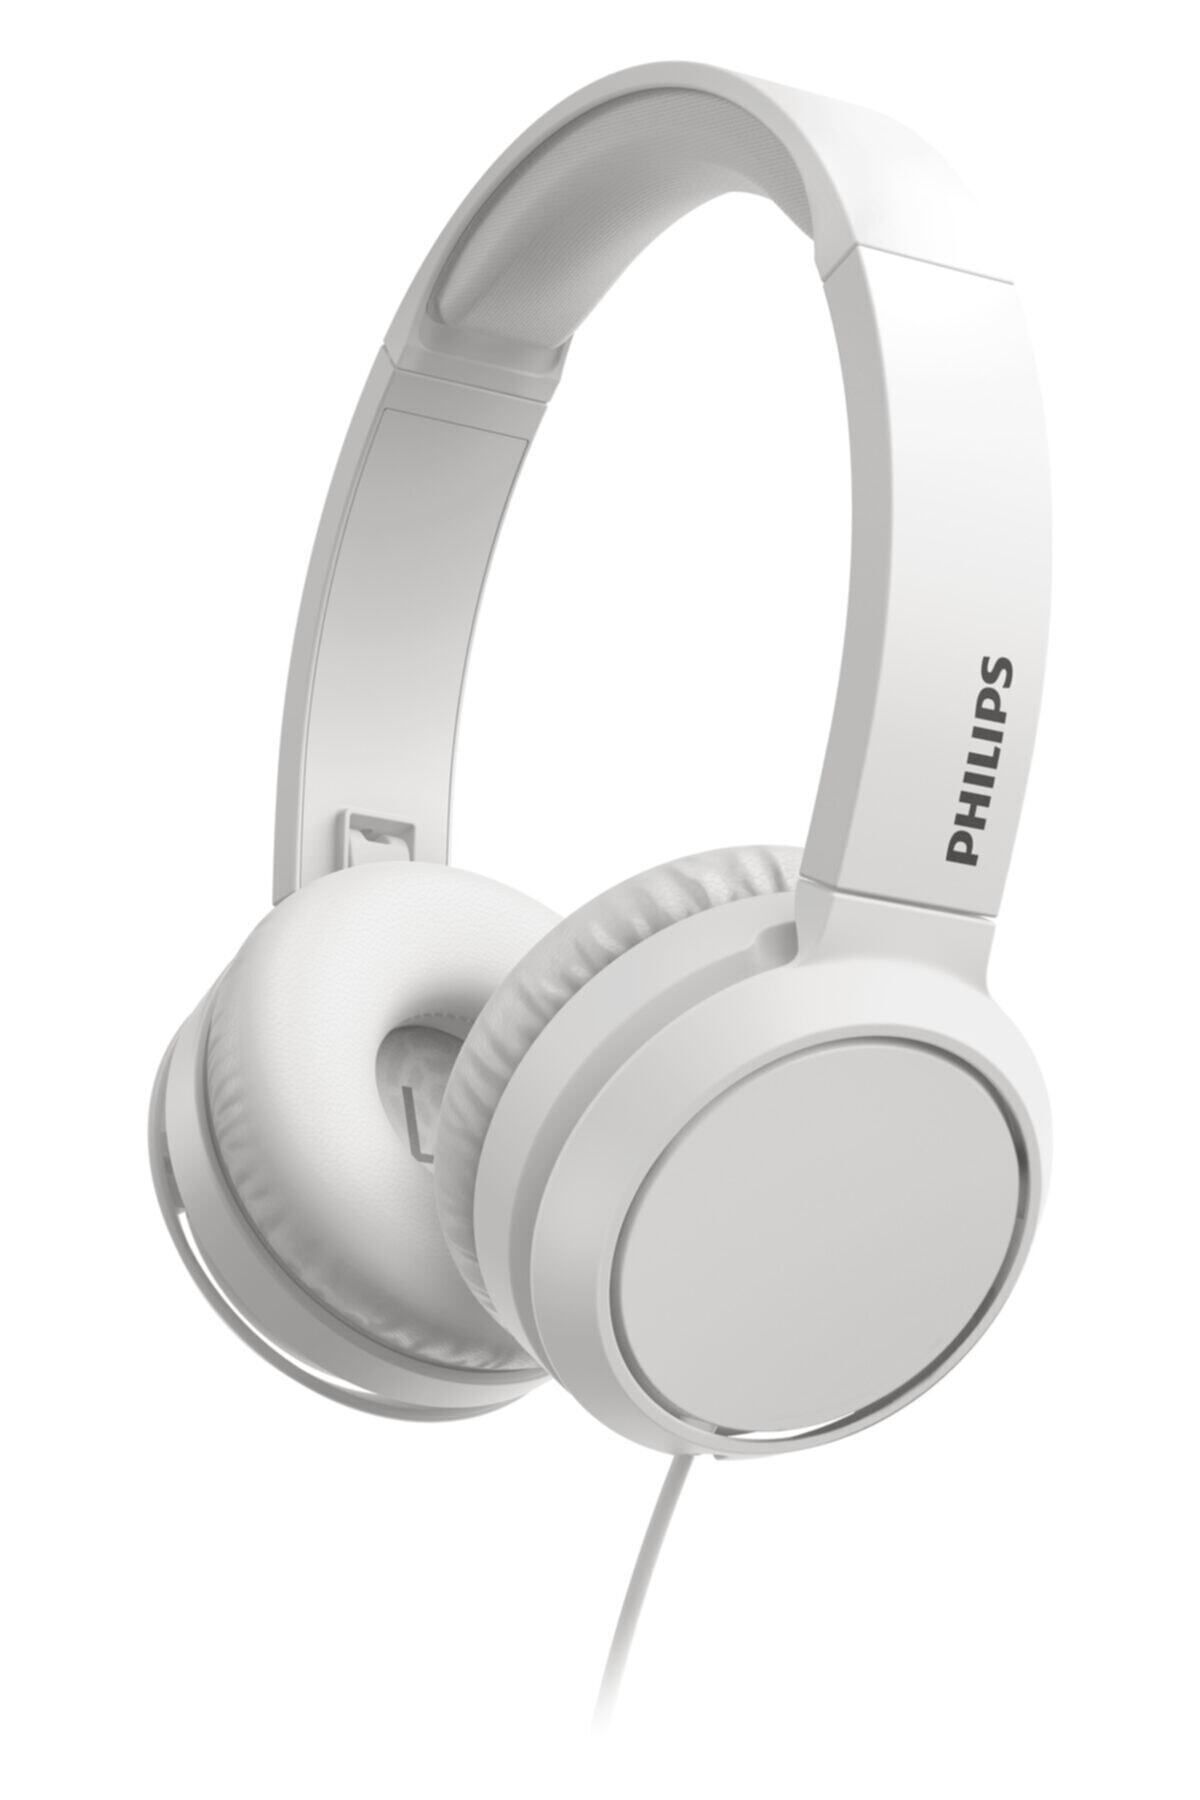 Philips Tah4105wt Beyaz Mikrofonlu Kablolu Kulak Üstü Kulaklık